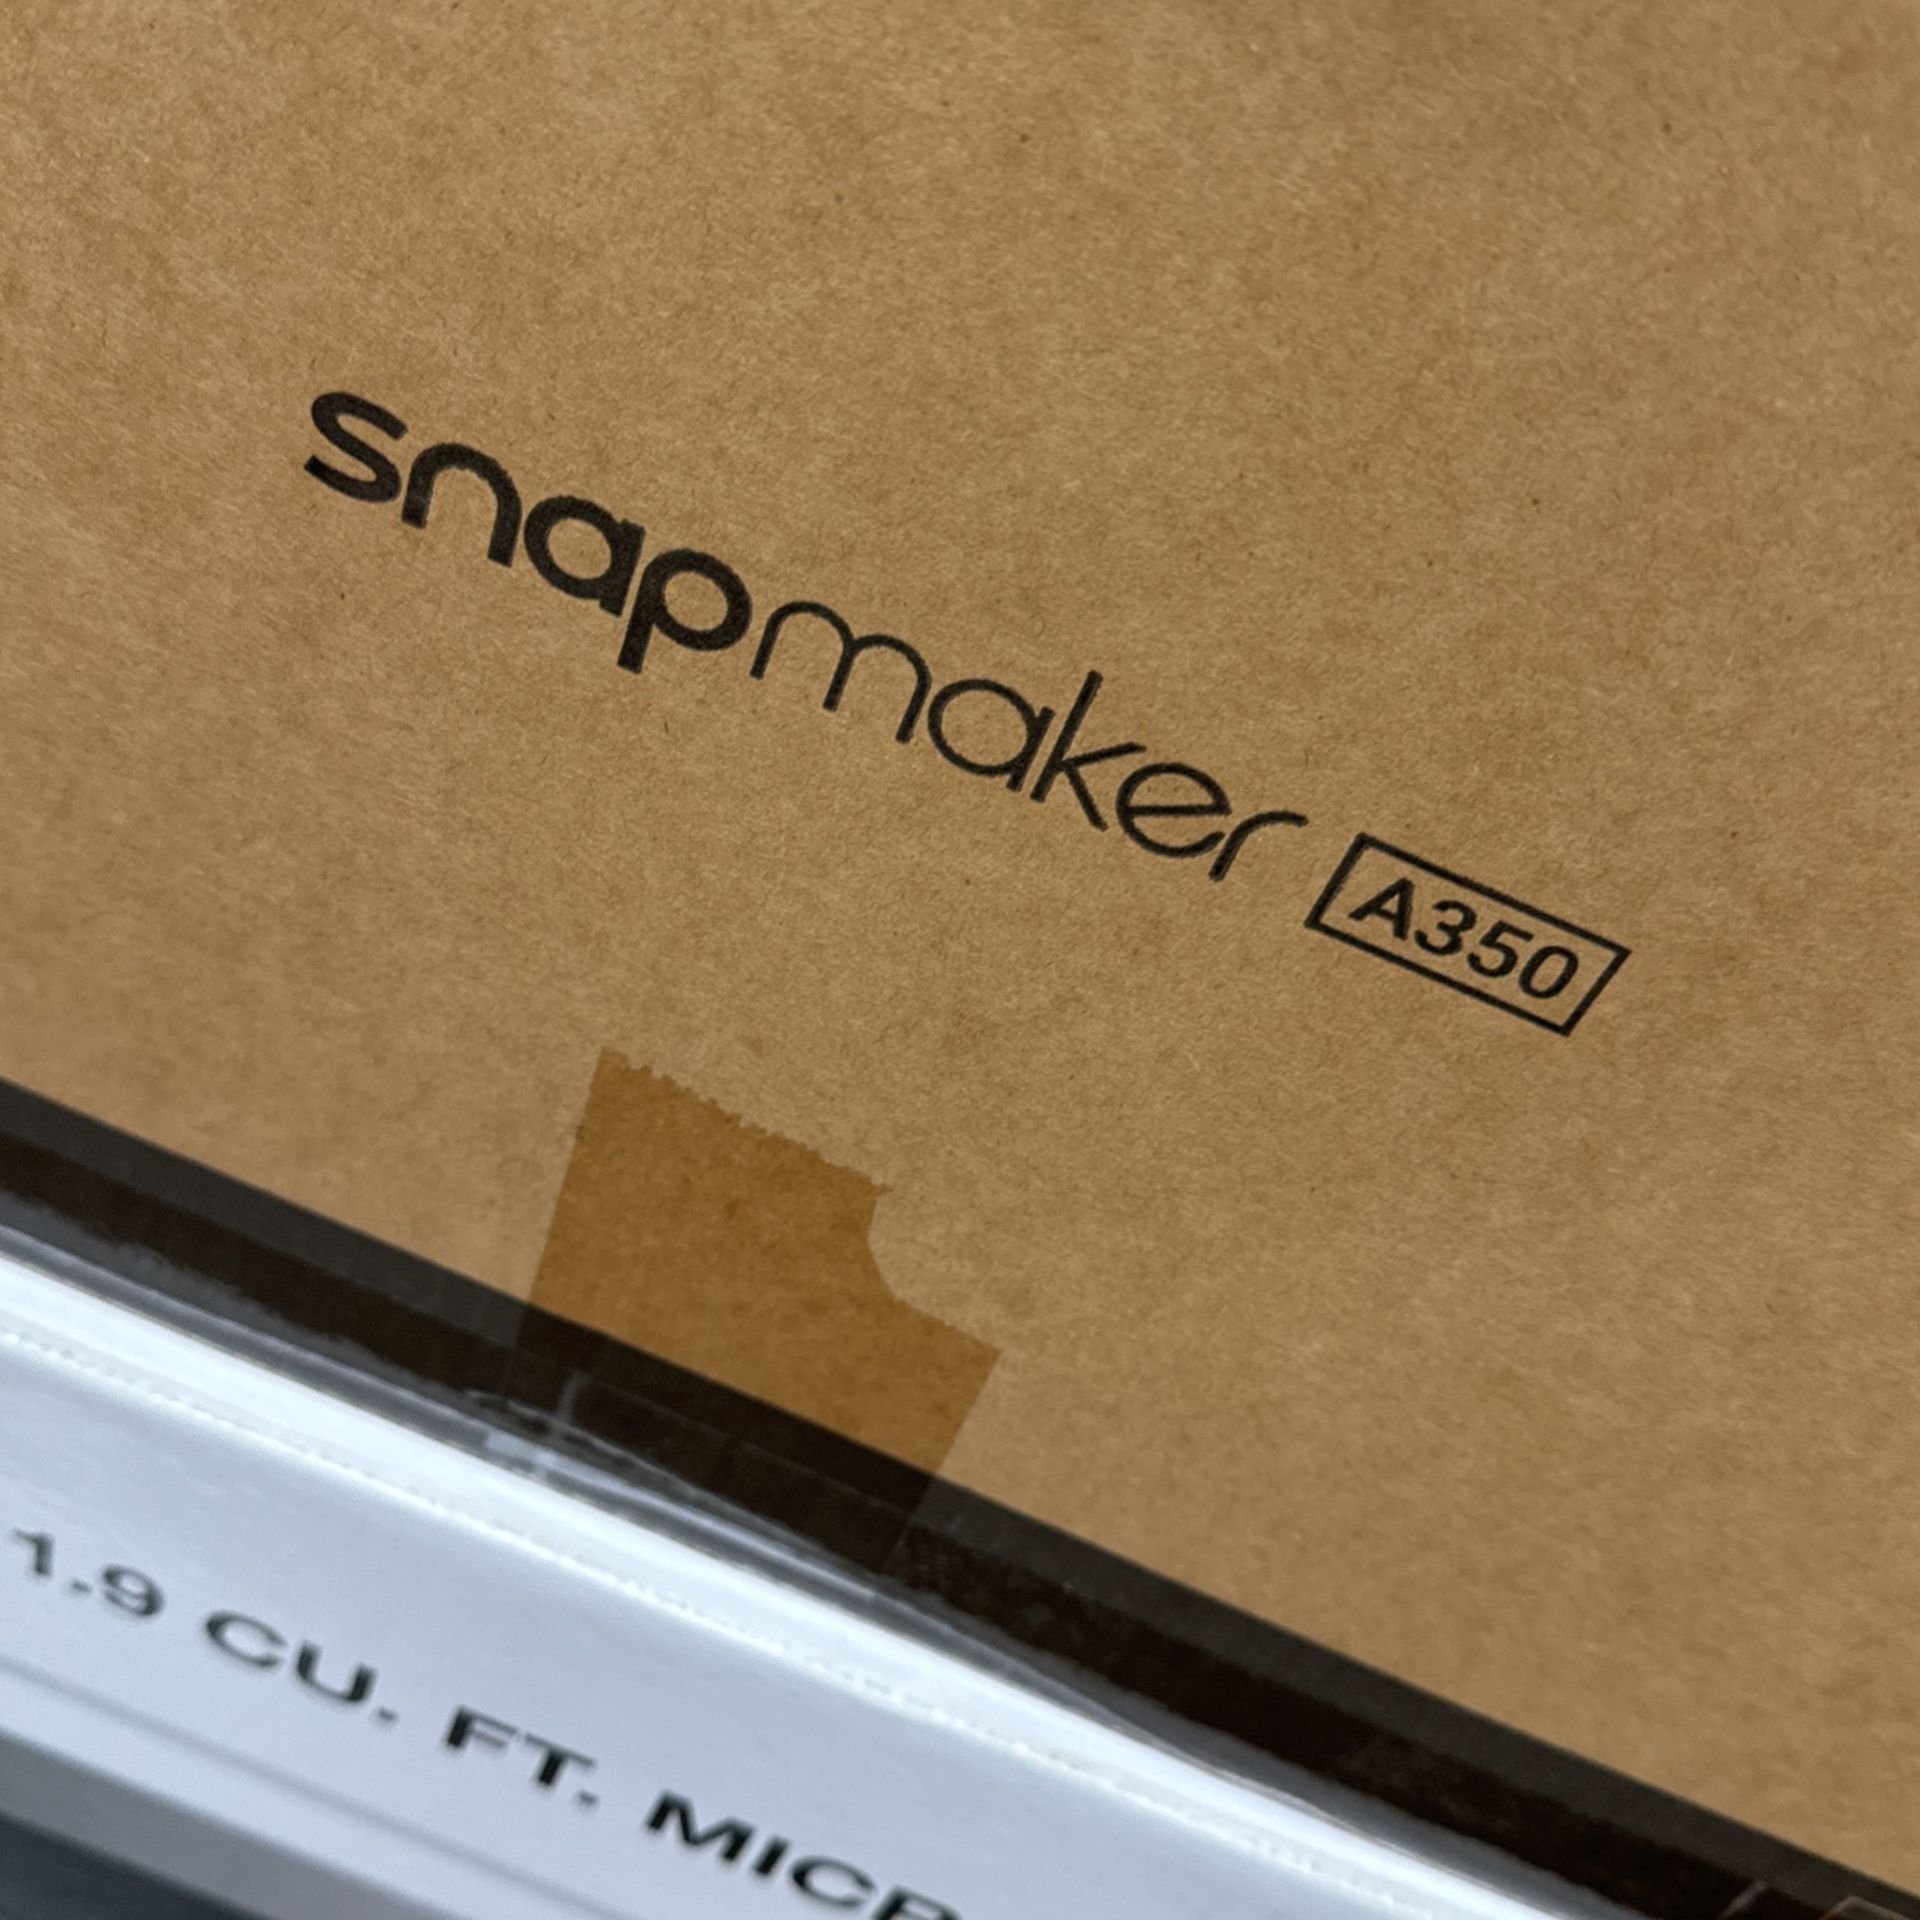 Snapmaker A350 - 3D Printer/ Engraver 